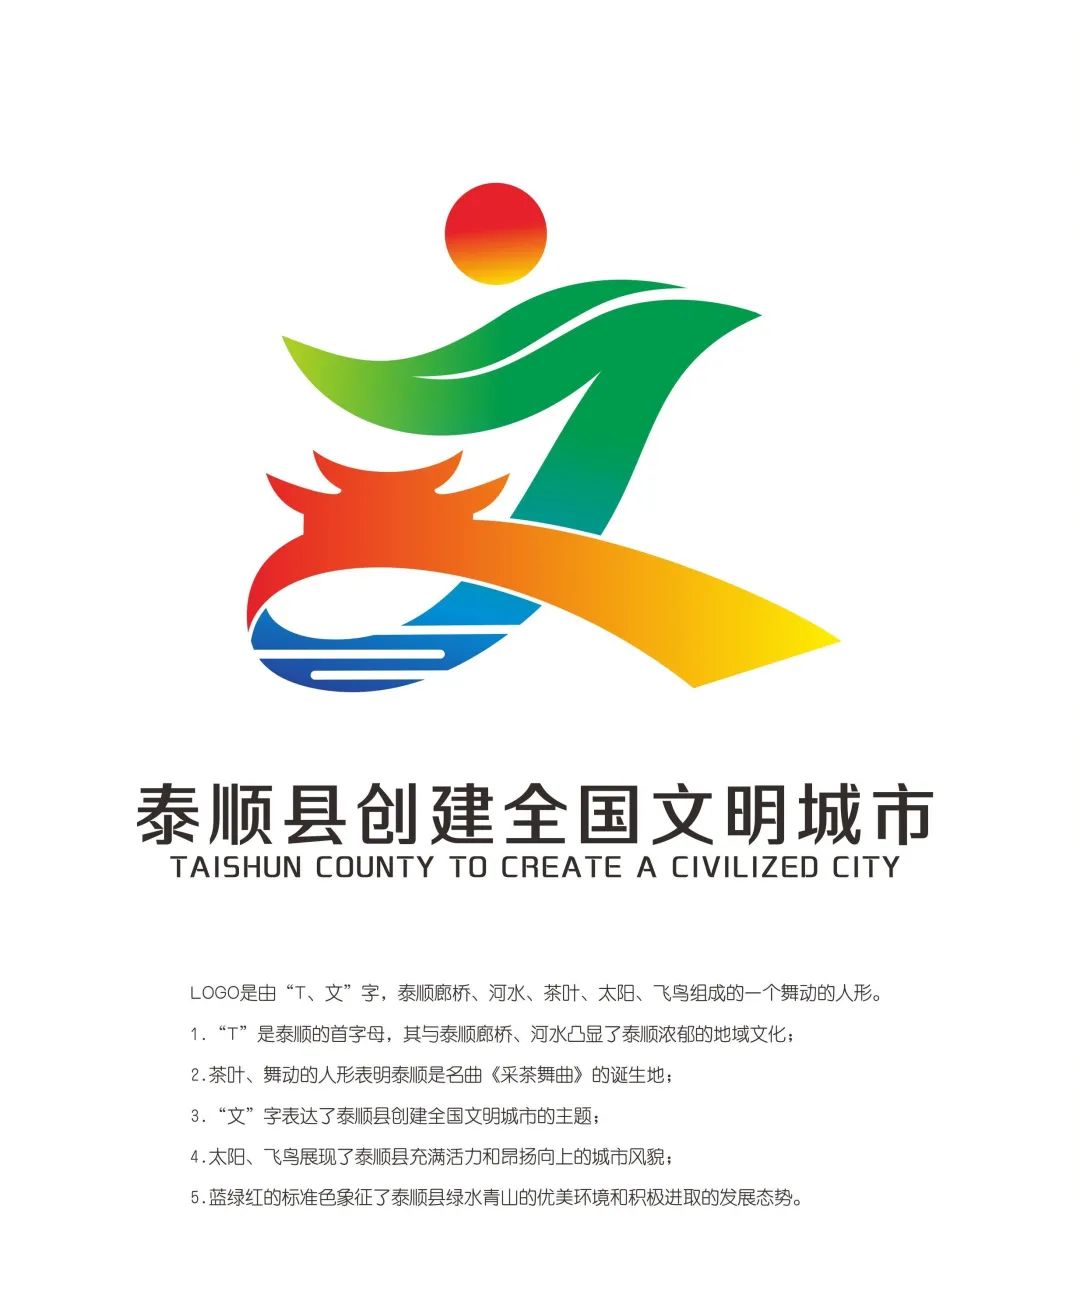 泰顺县创建文明城市主题logo和宣传口号征集结果出炉啦!